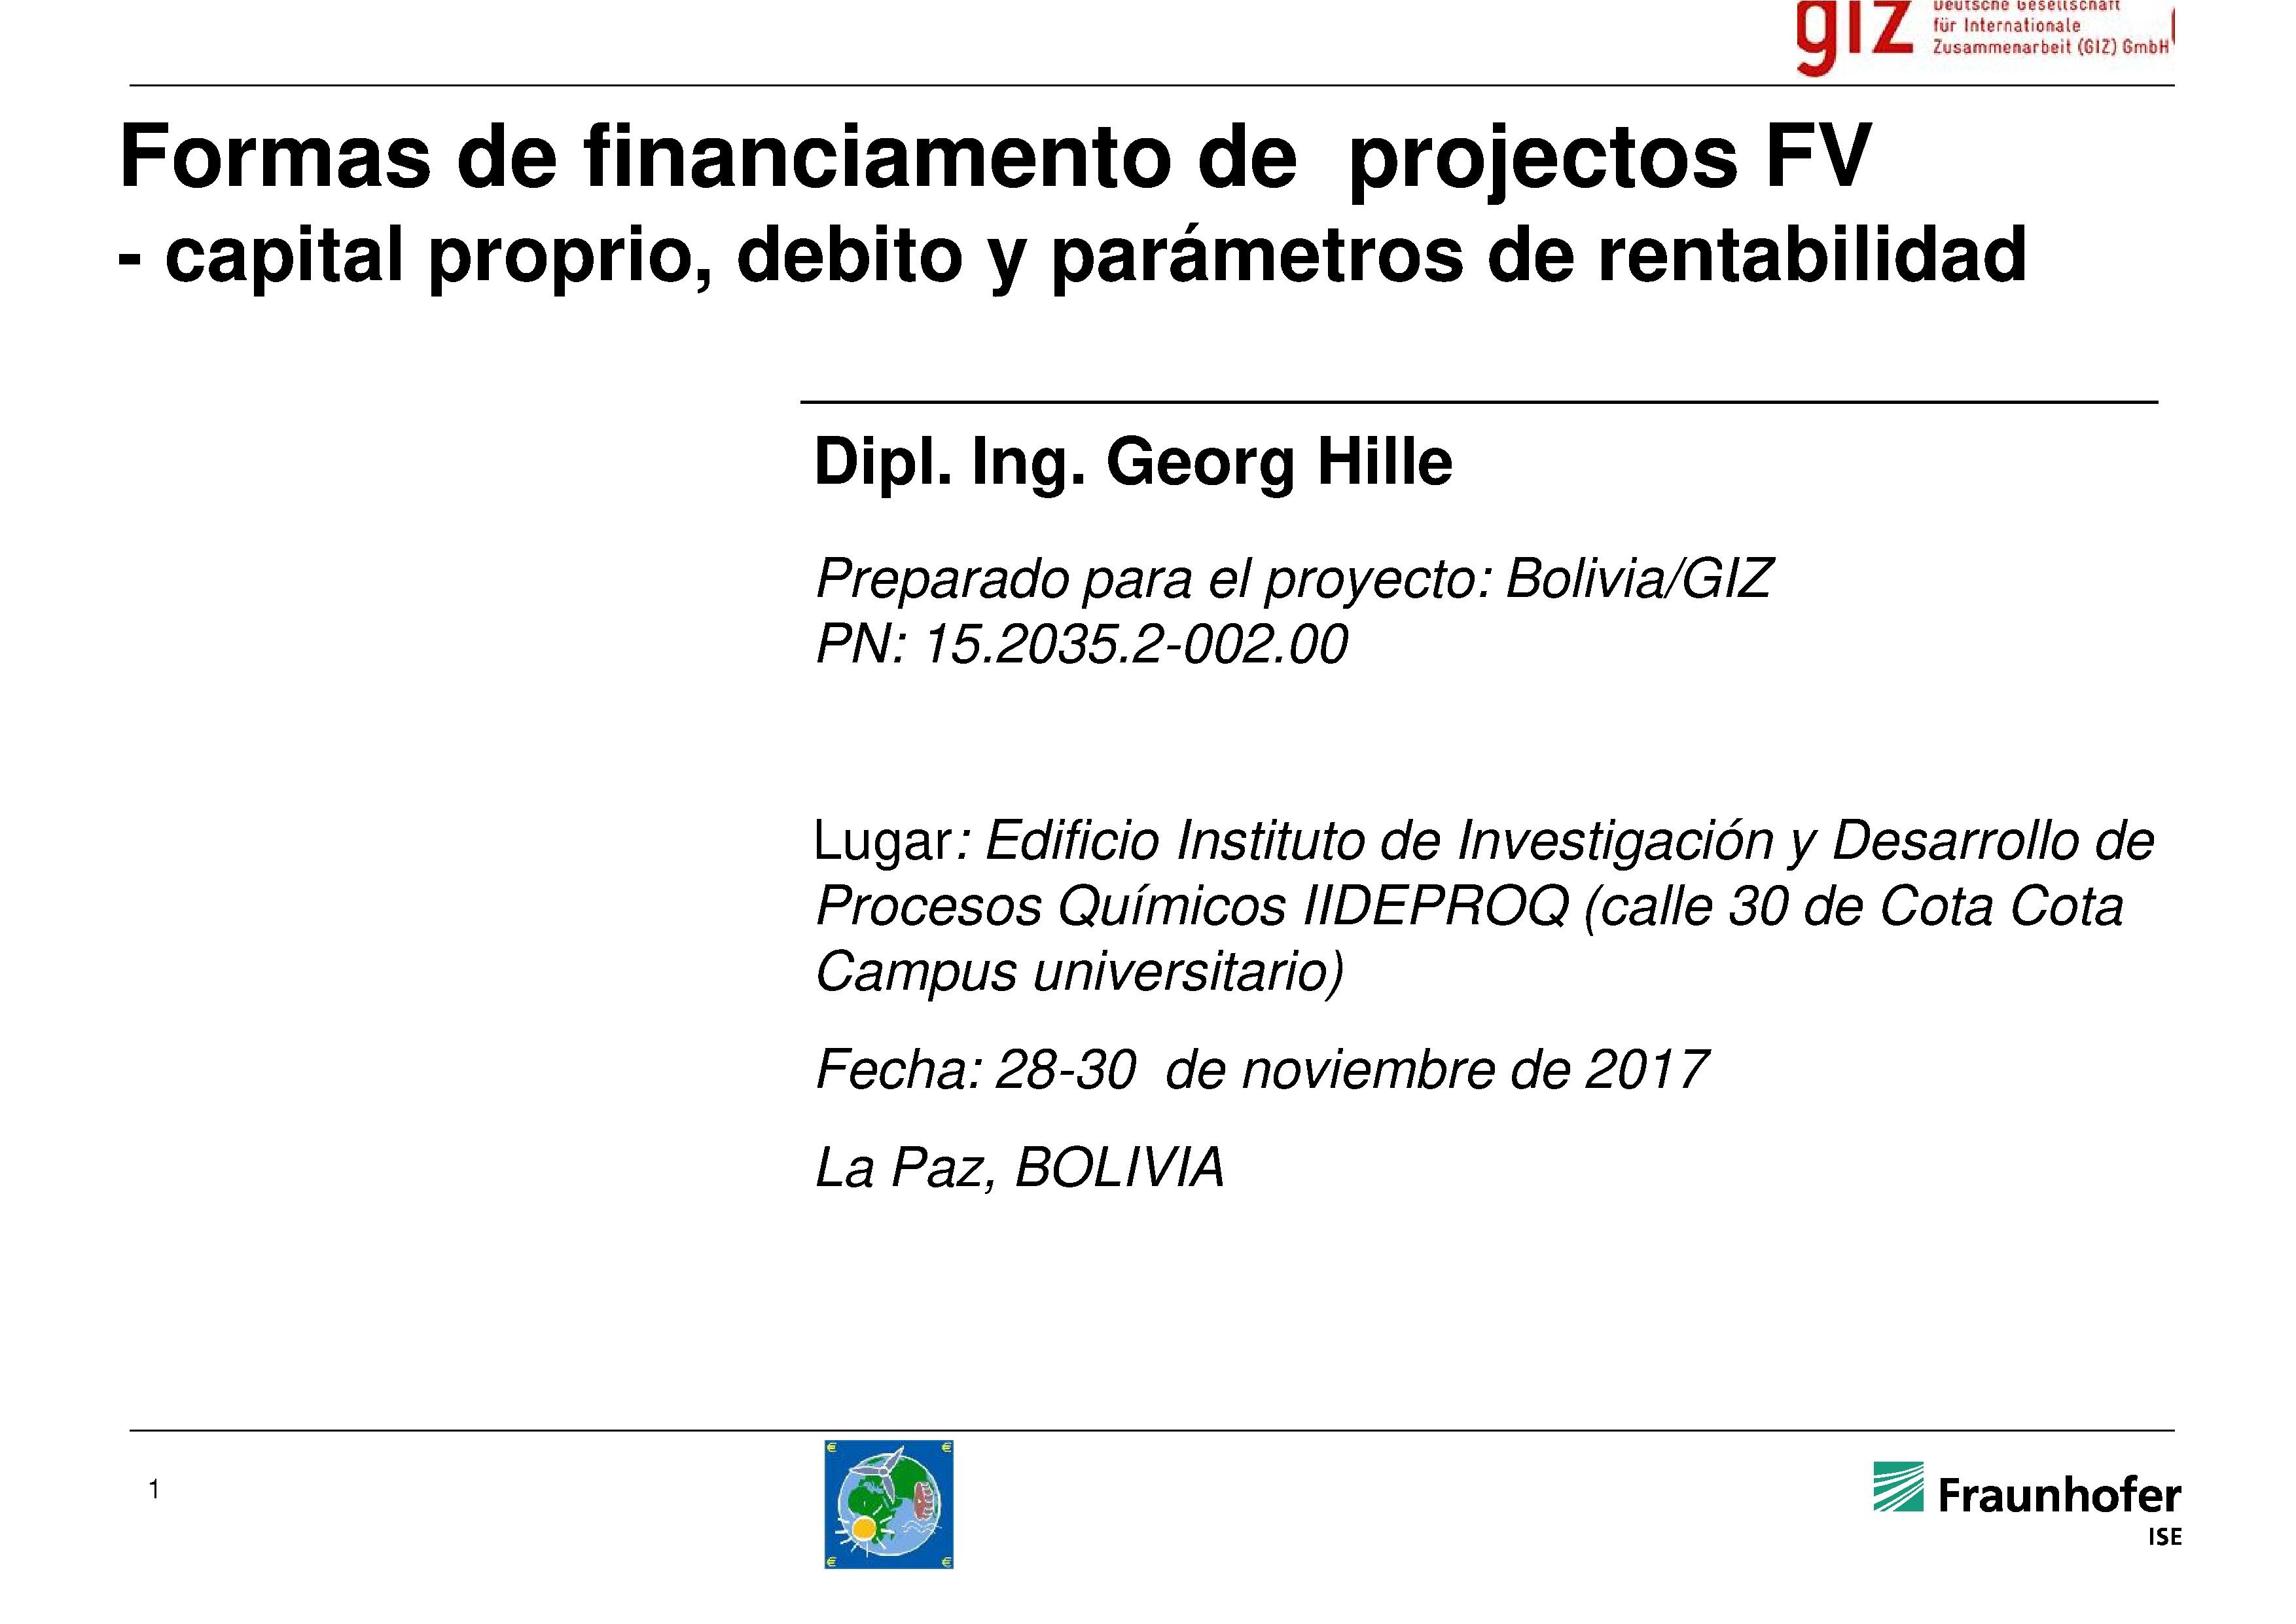 • Formas de financiamiento de projectos FV: Capital propio, débito y parámetros de rentabilidad (Georg Hille).